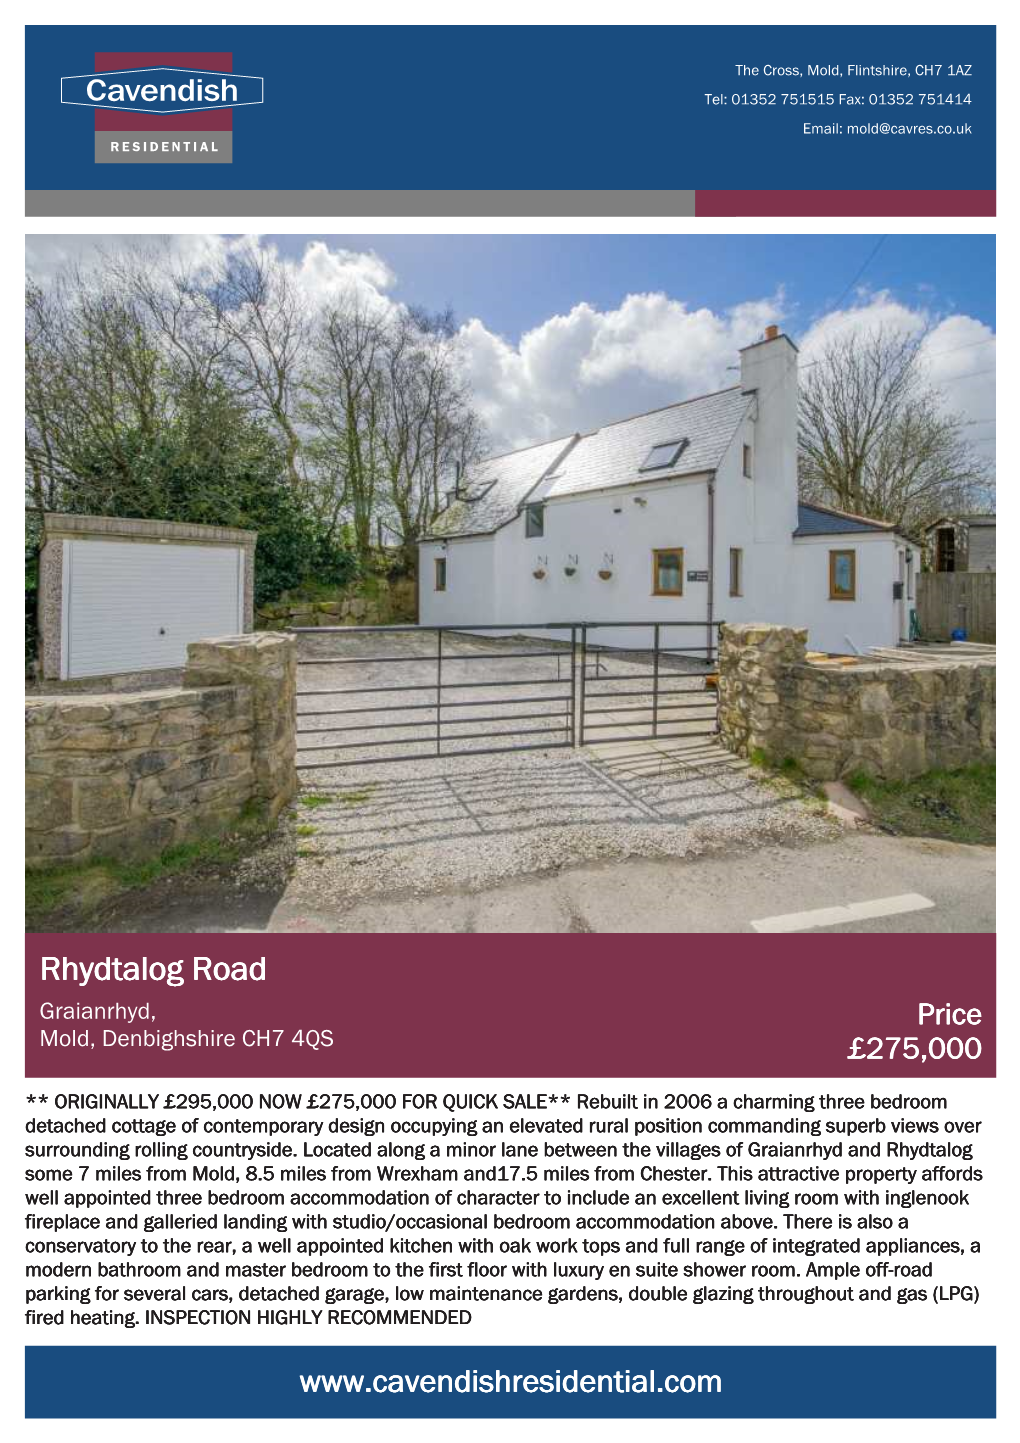 Rhydtalog Road Graianrhyd, Price Mold, Denbighshire CH7 4QS £275,000